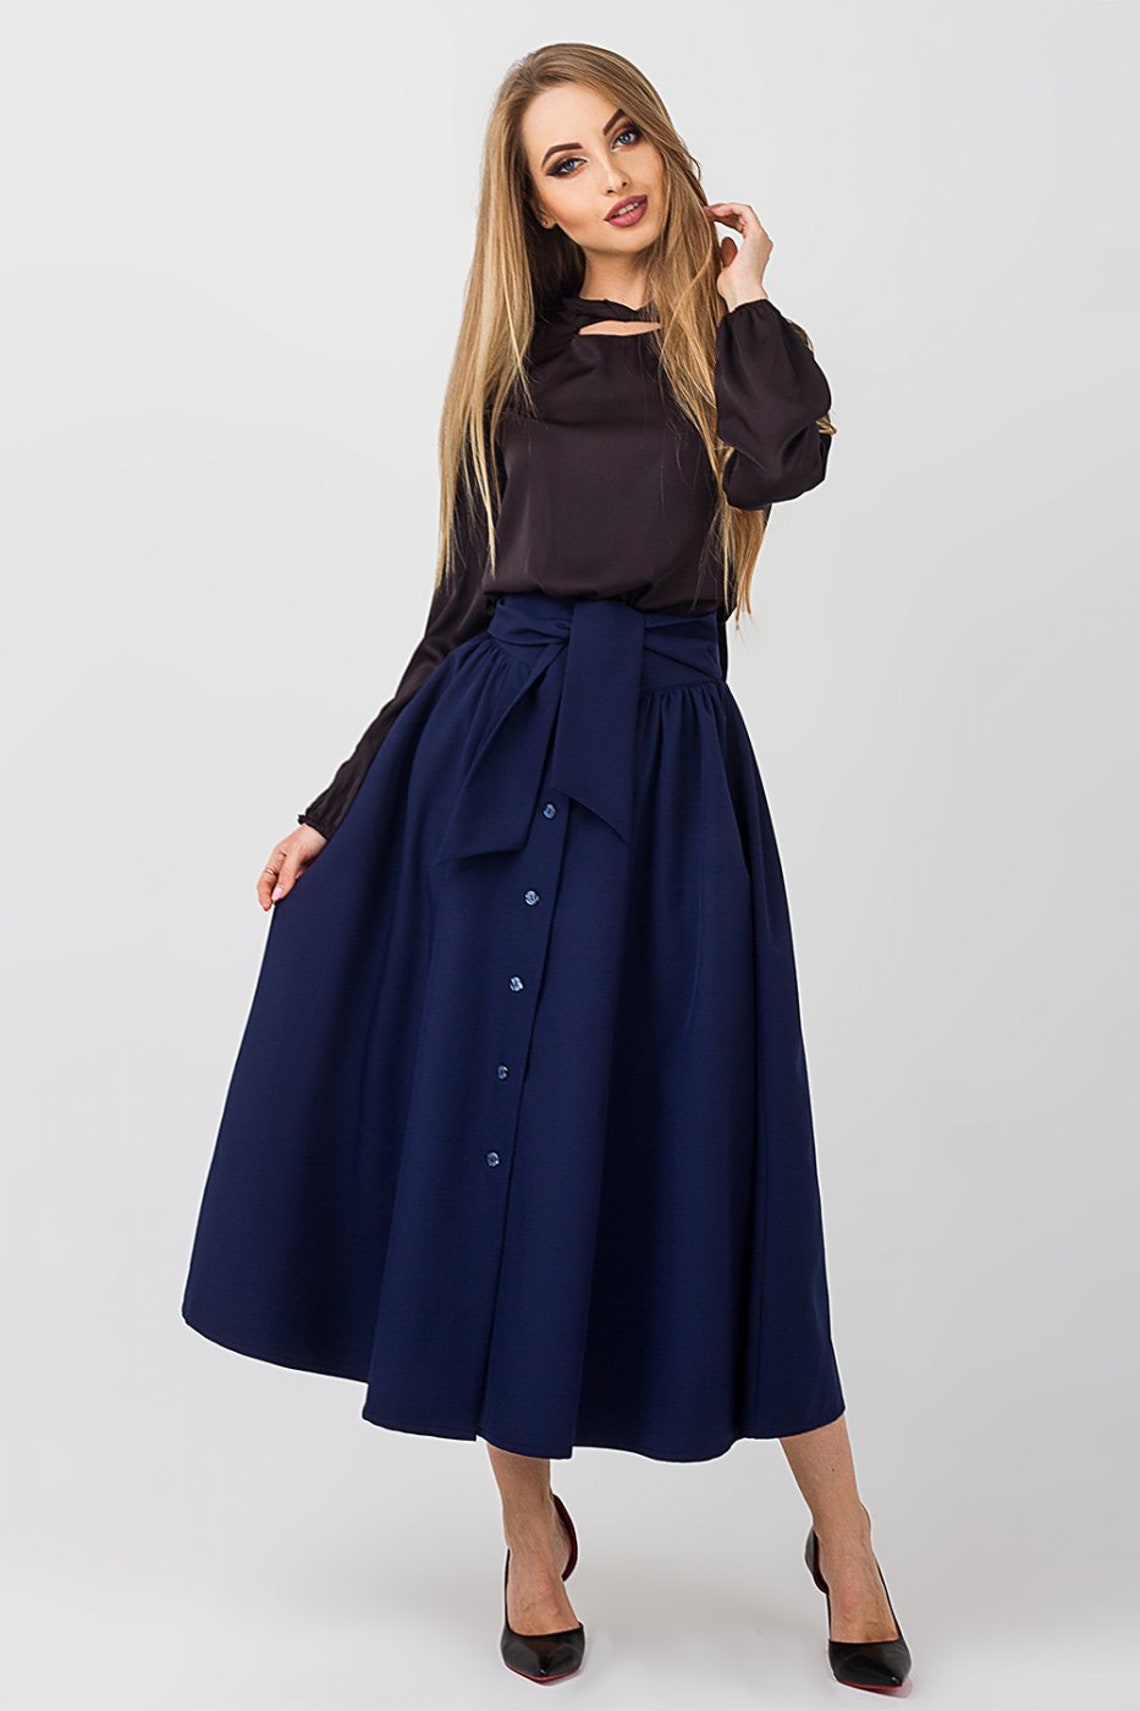 Fashion skirt Belt Spring skirt Dark blue skirt Occasion skirt | Etsy